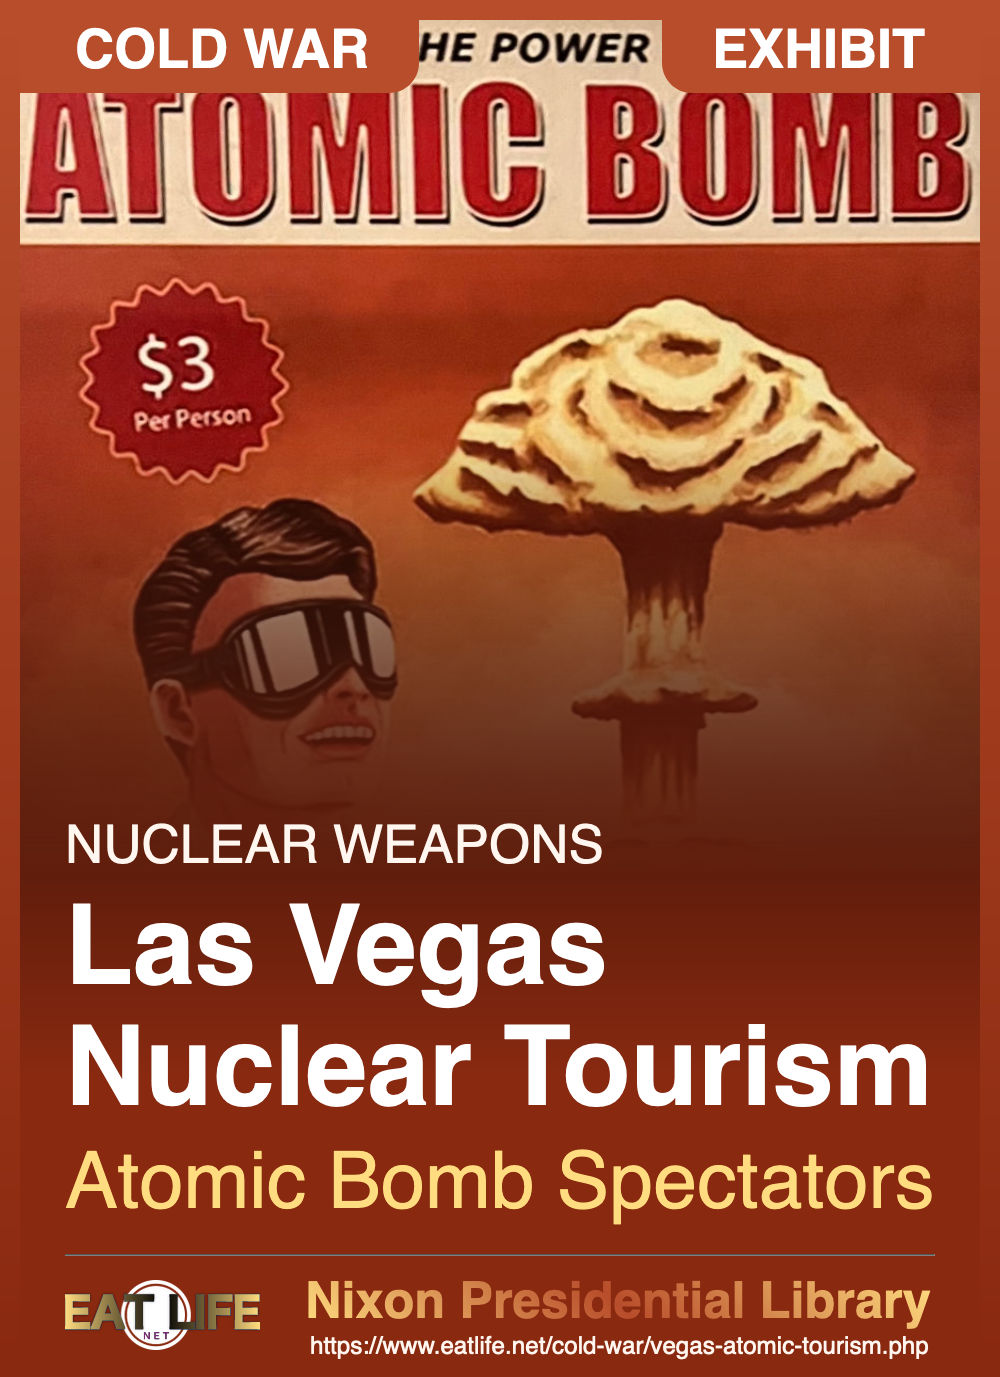 Las Vegas Nuclear Tourism